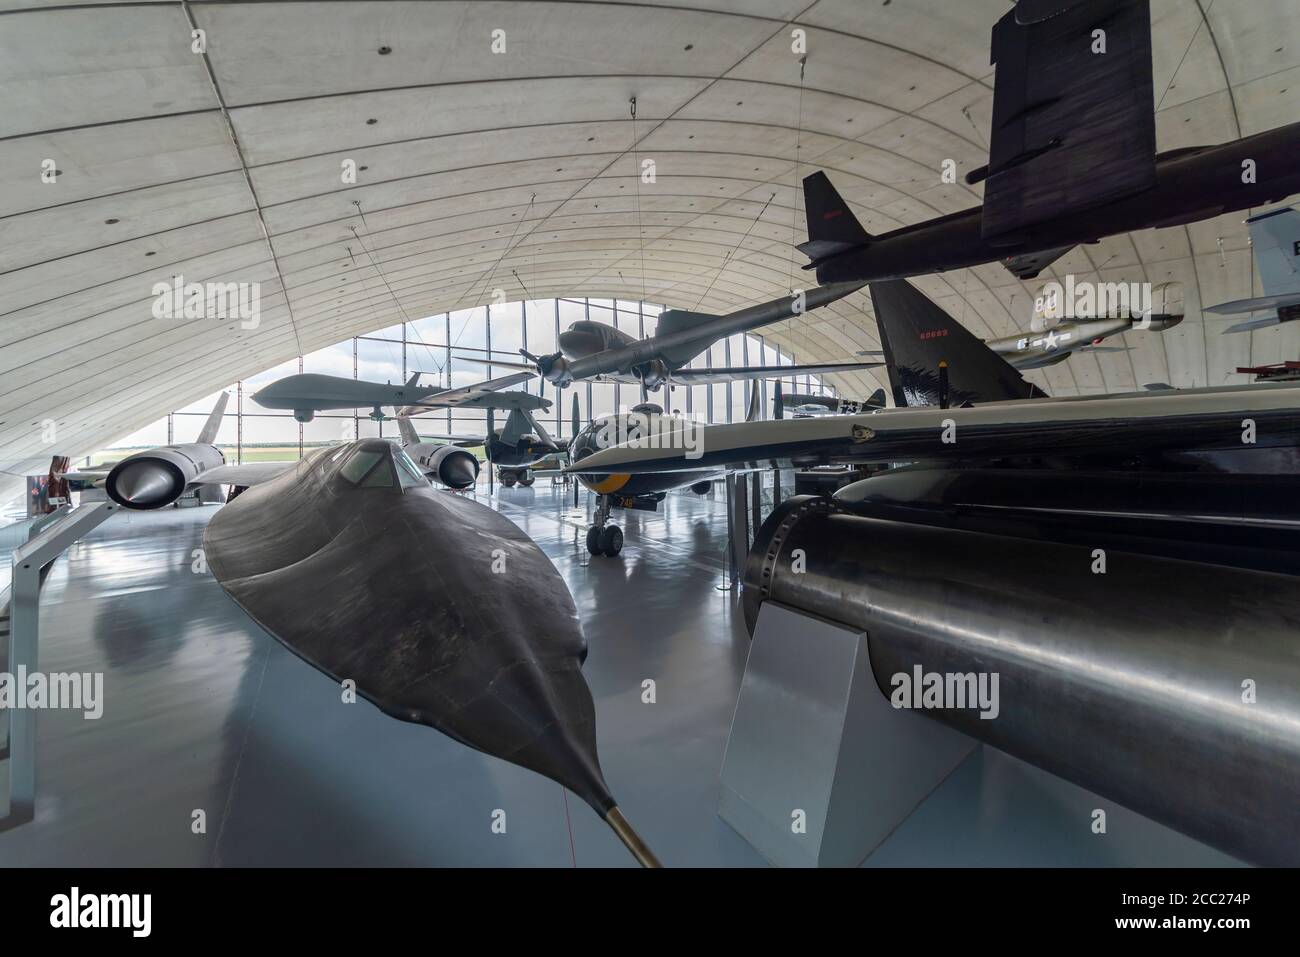 Intérieur du musée de l'Air américain, Musée impérial de la guerre, Duxford, Cambridgeshire, Royaume-Uni. Lockheed SR-71 Blackbird Banque D'Images